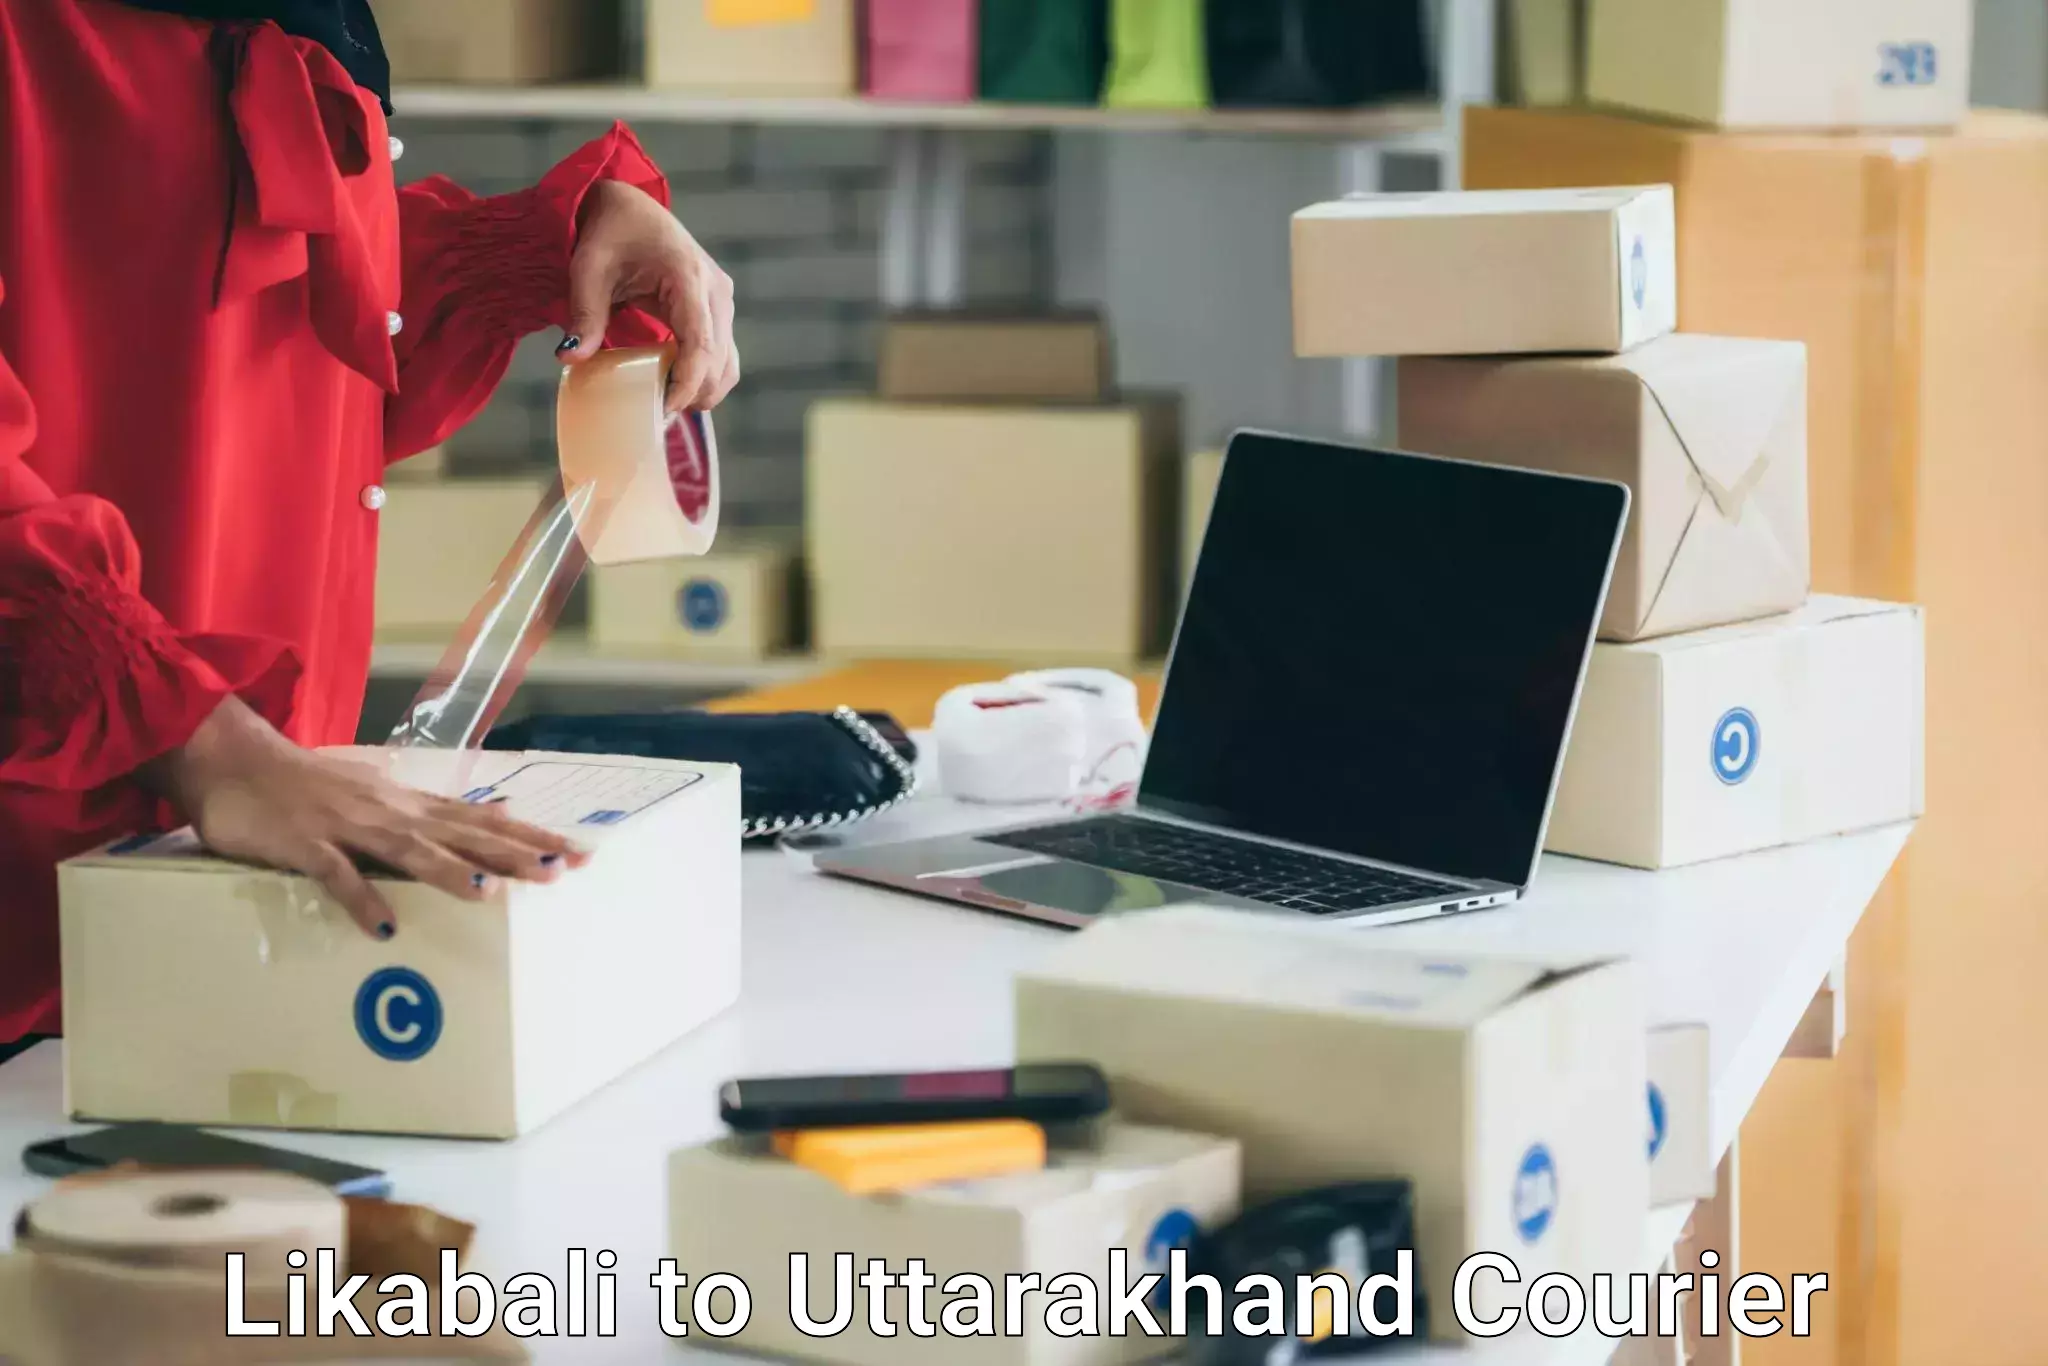 Furniture relocation experts Likabali to Uttarakhand